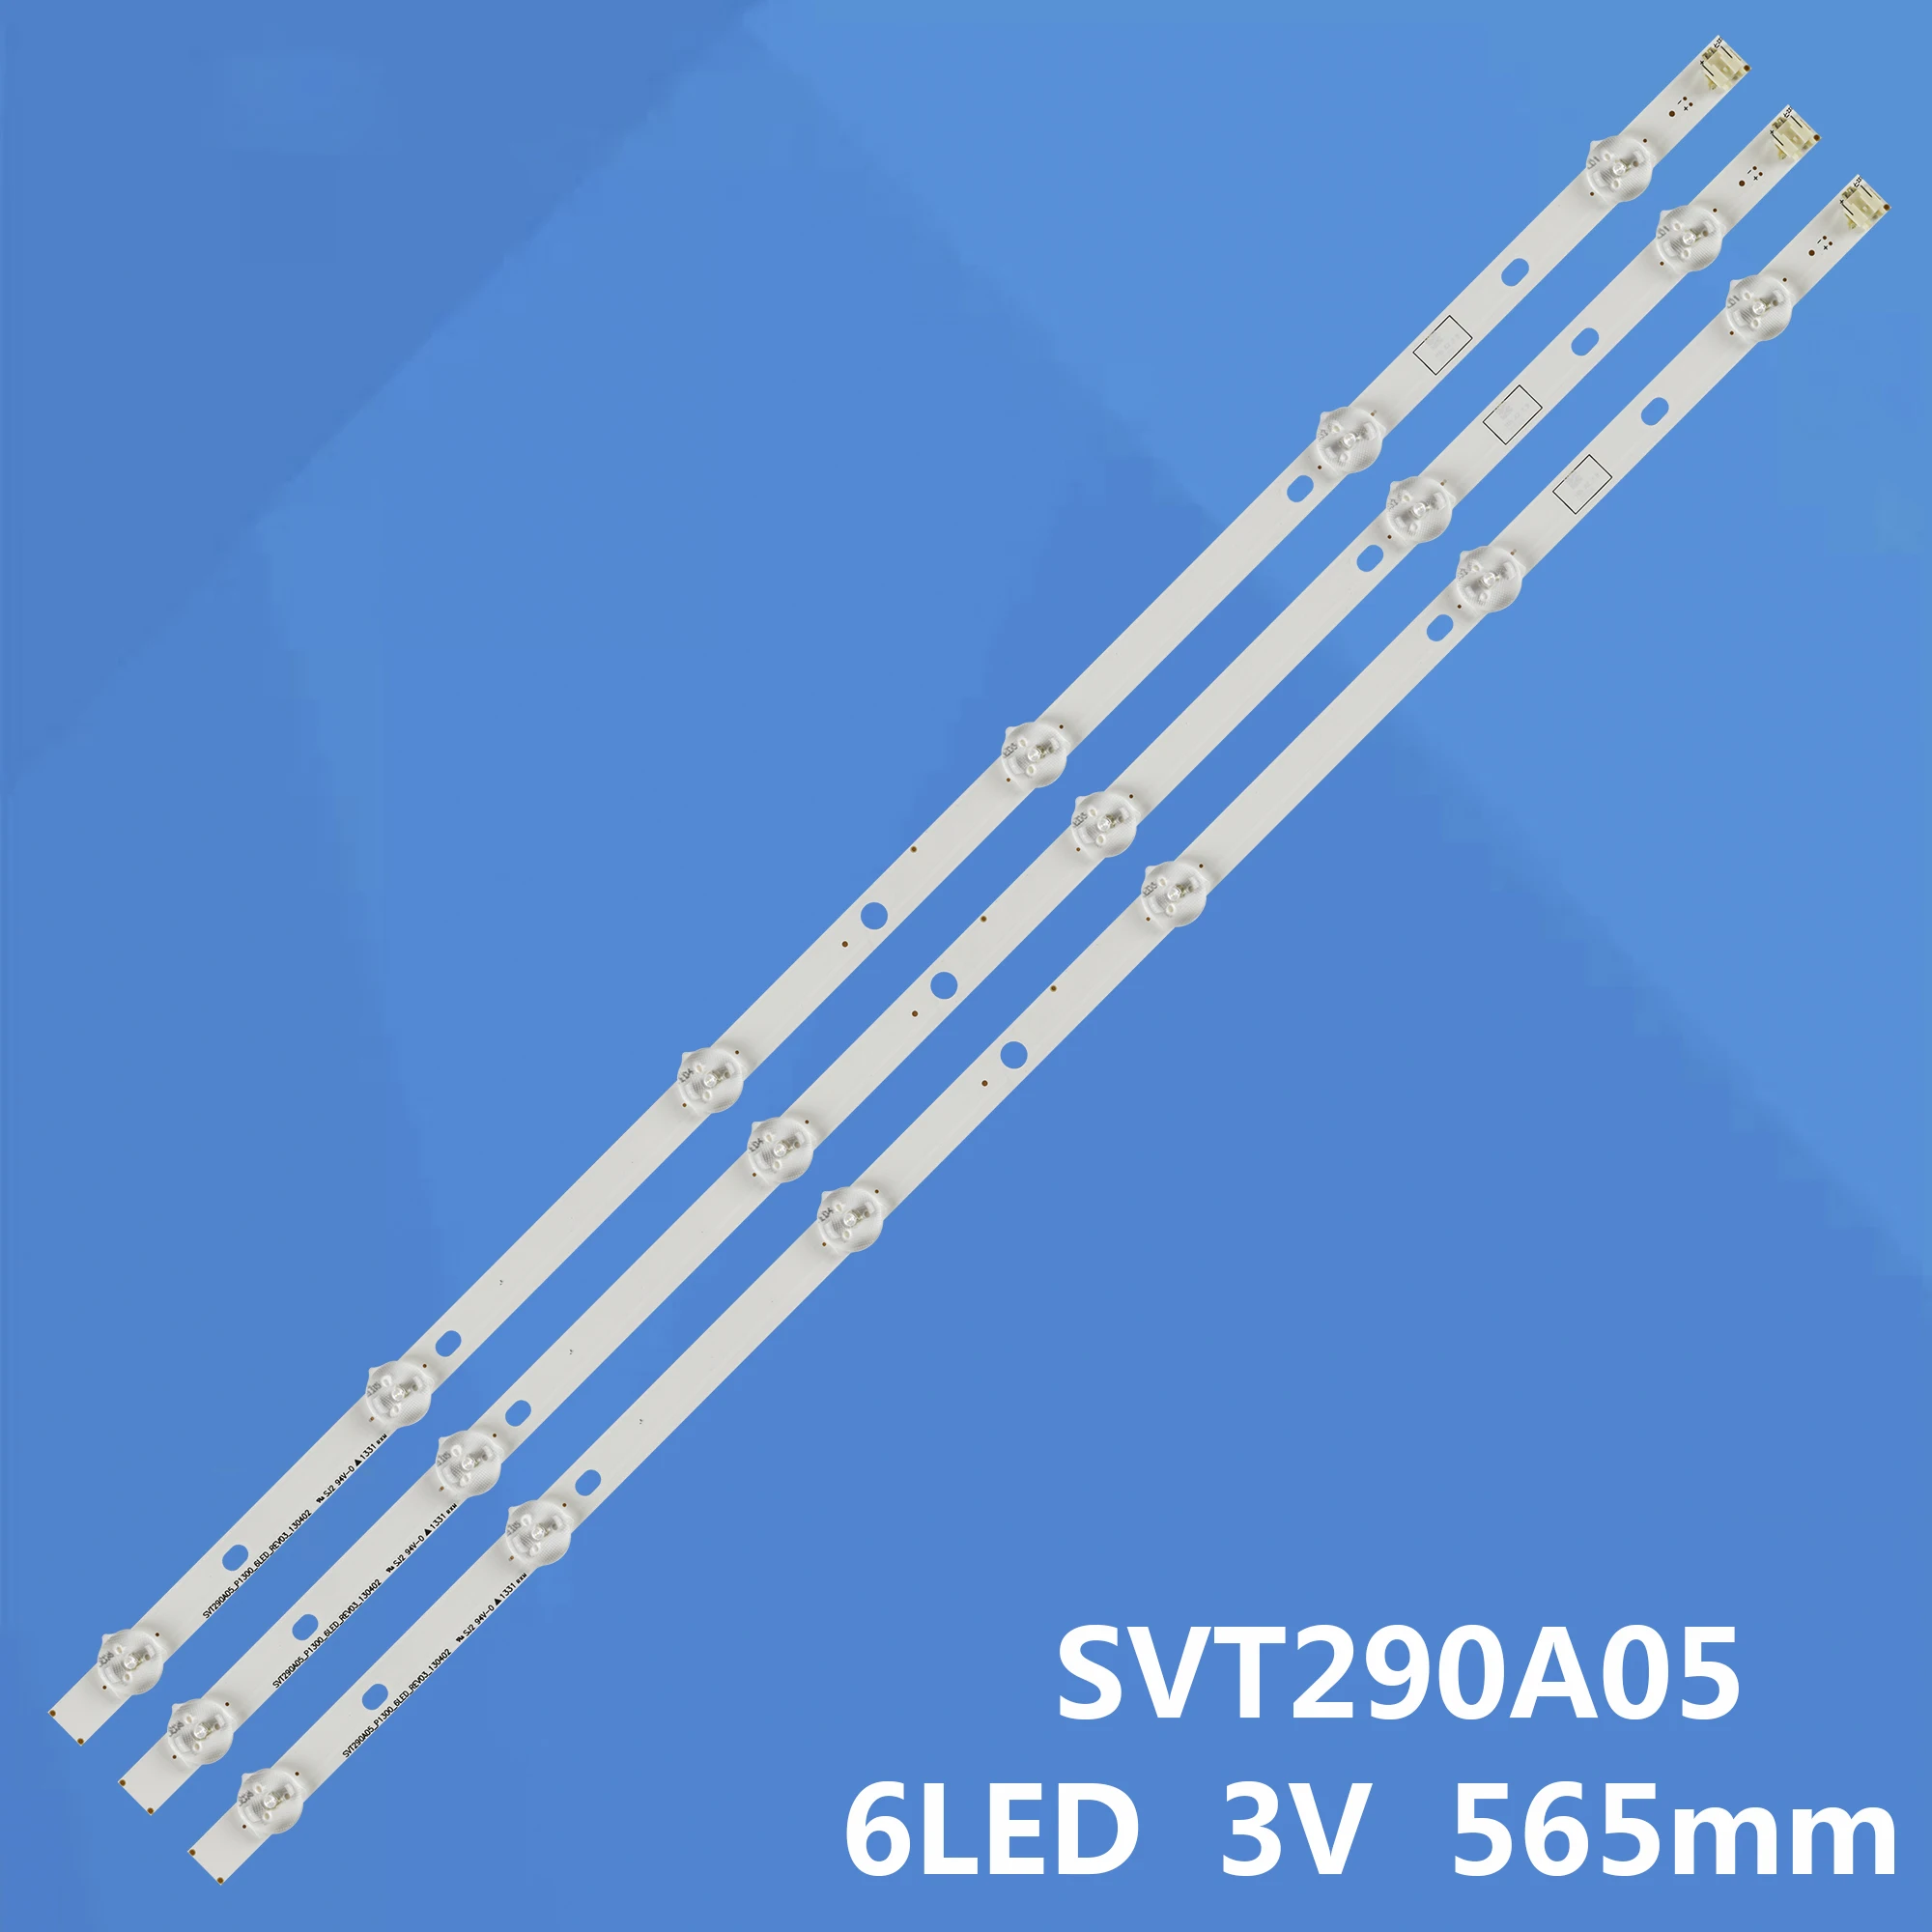 

New LED Strip SVT290A05 P1300 6LED REV03 LED BACKLIGHT STRIPS FOR 29P1300VT 565MM 29P1300D